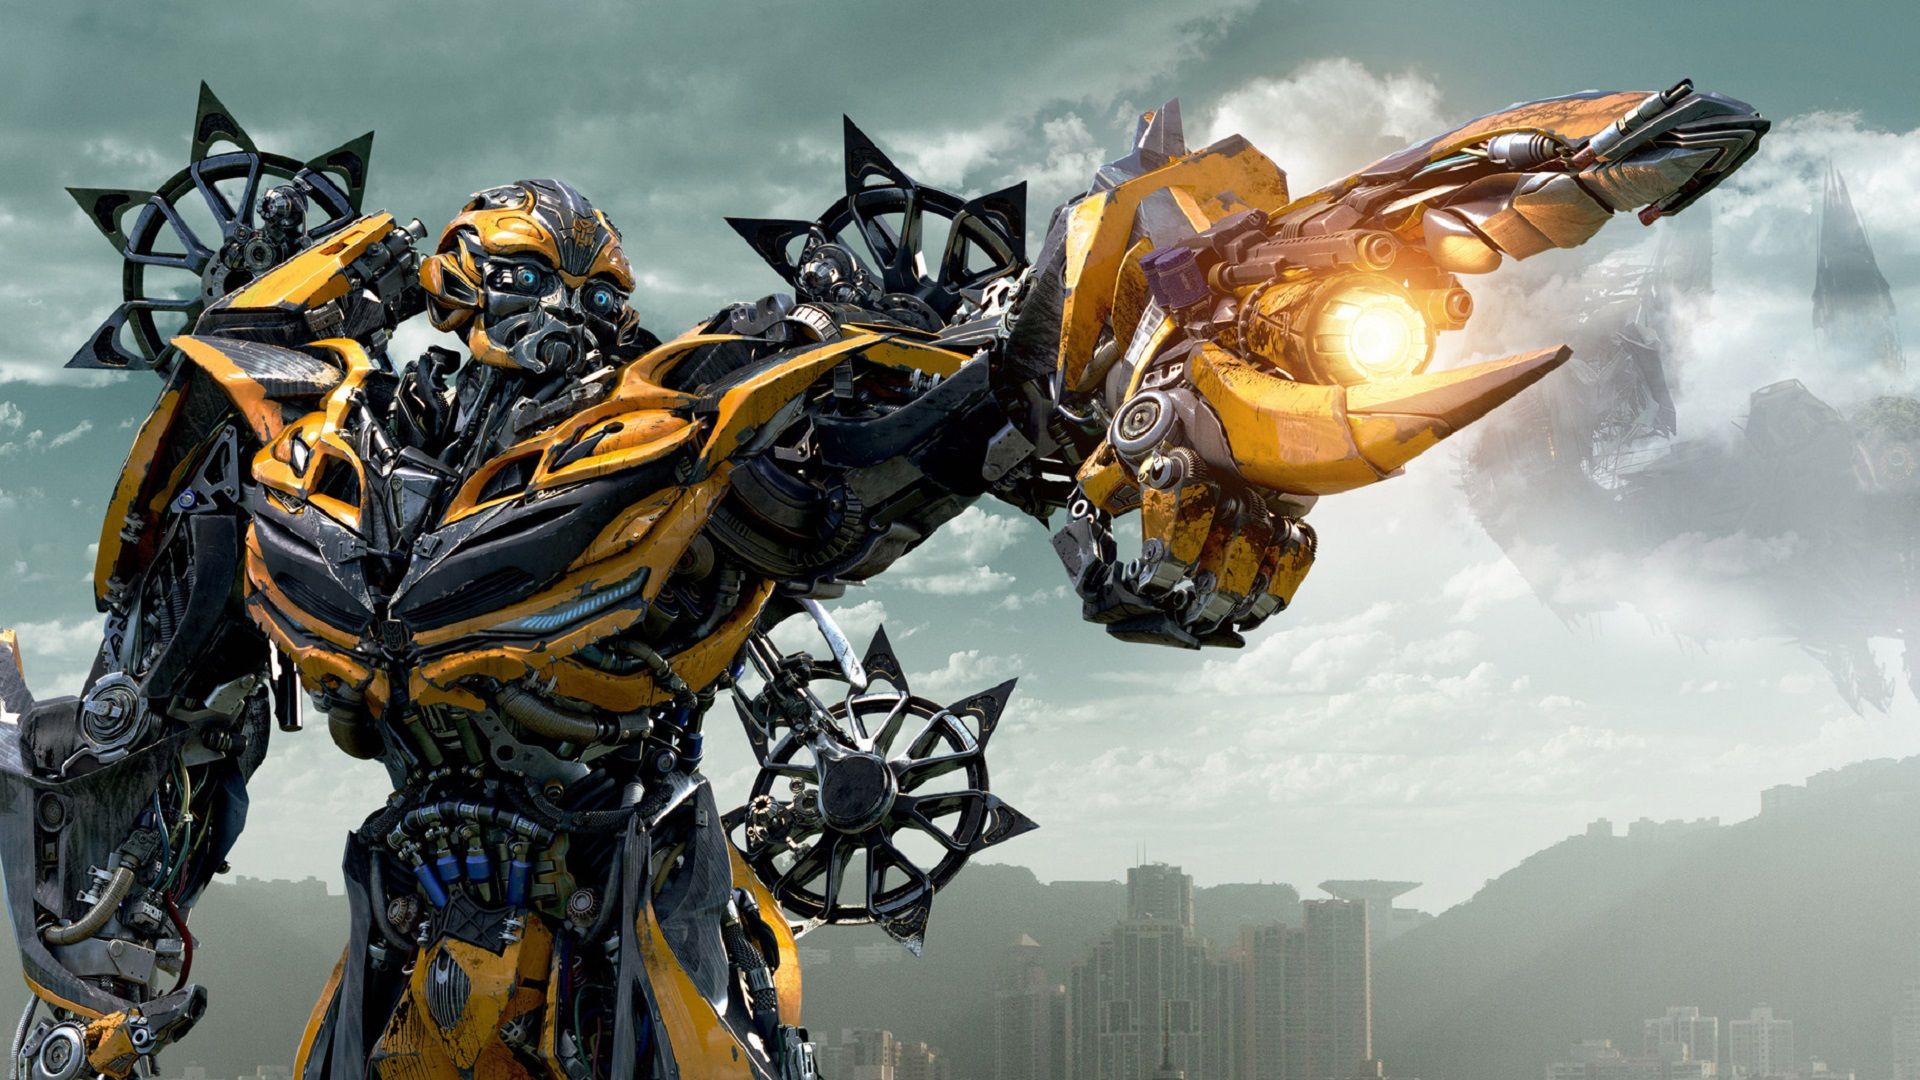 NIKKO Robot Autobot Bumblebee Transformers 4 - BestofRobots